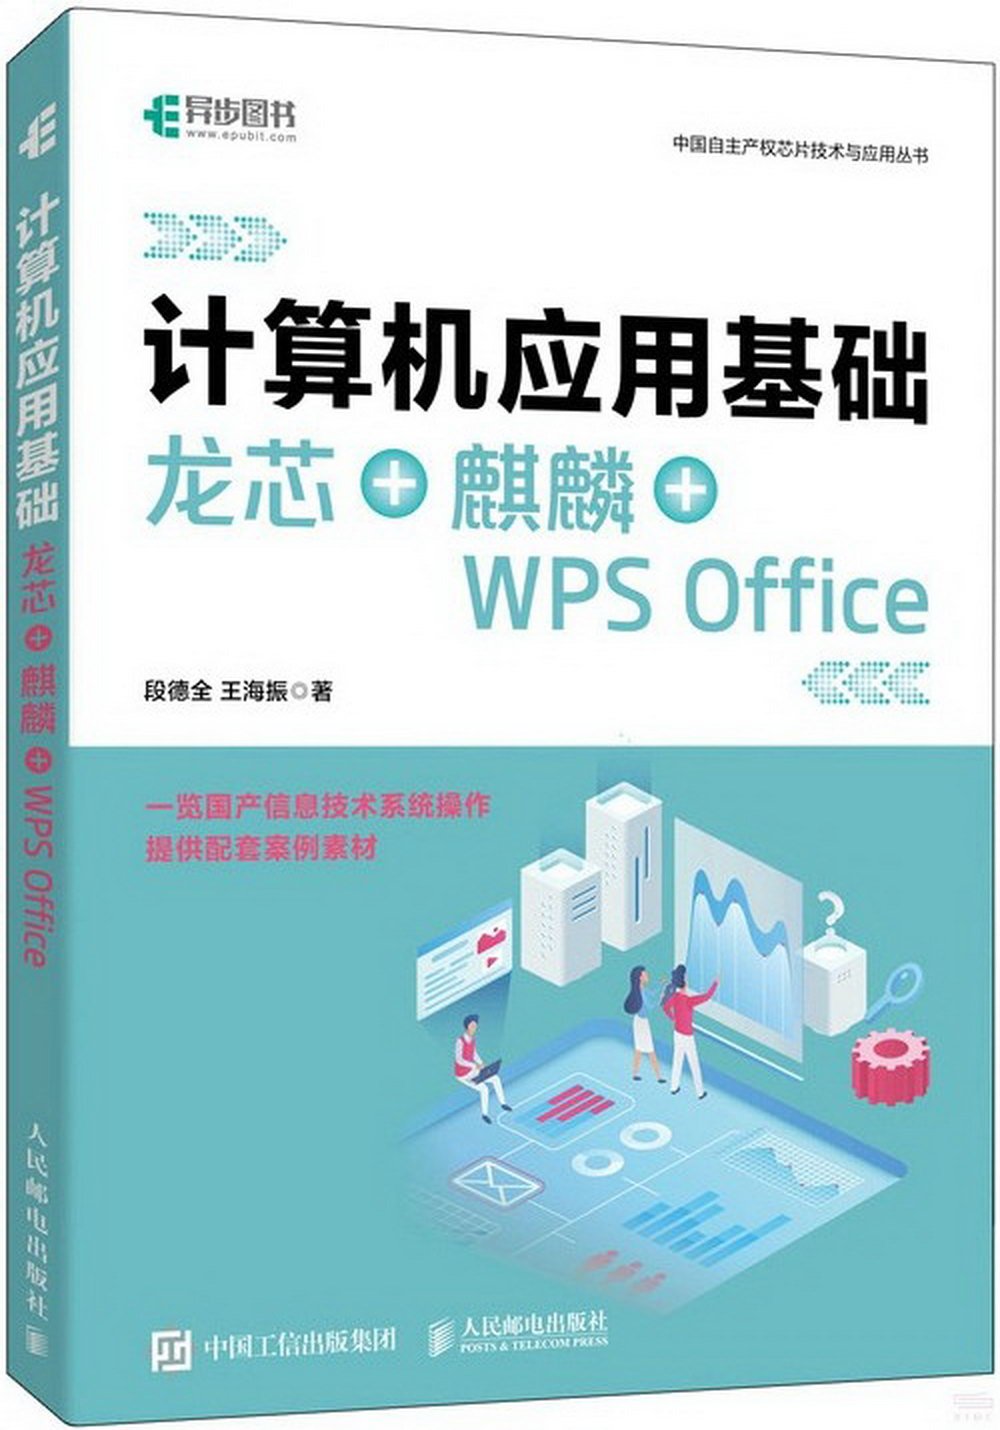 計算機應用基礎：龍芯+麒麟+WPS Office